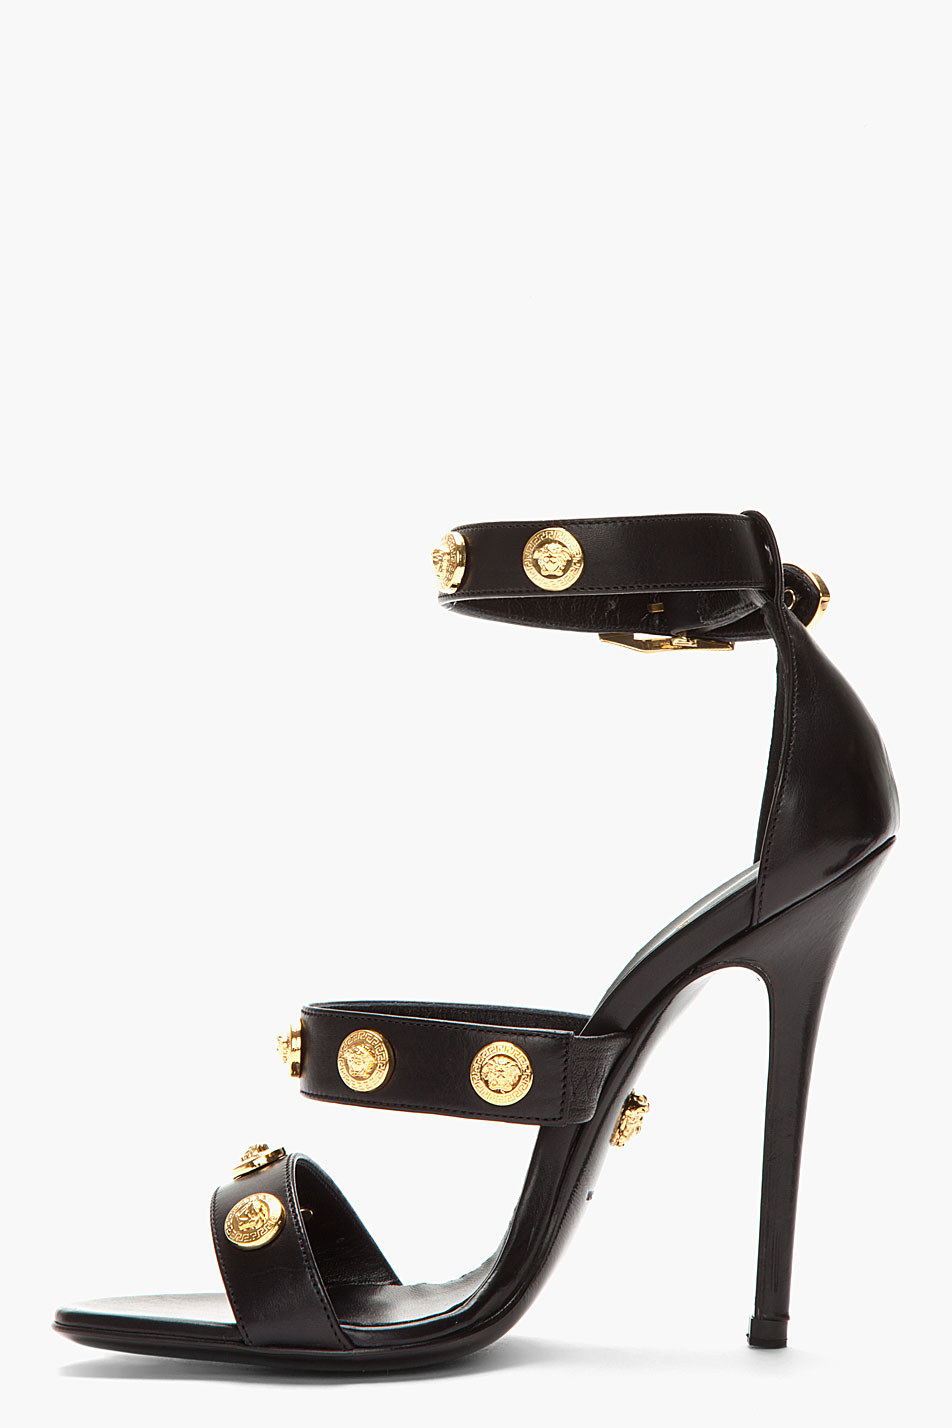 gold versace heels